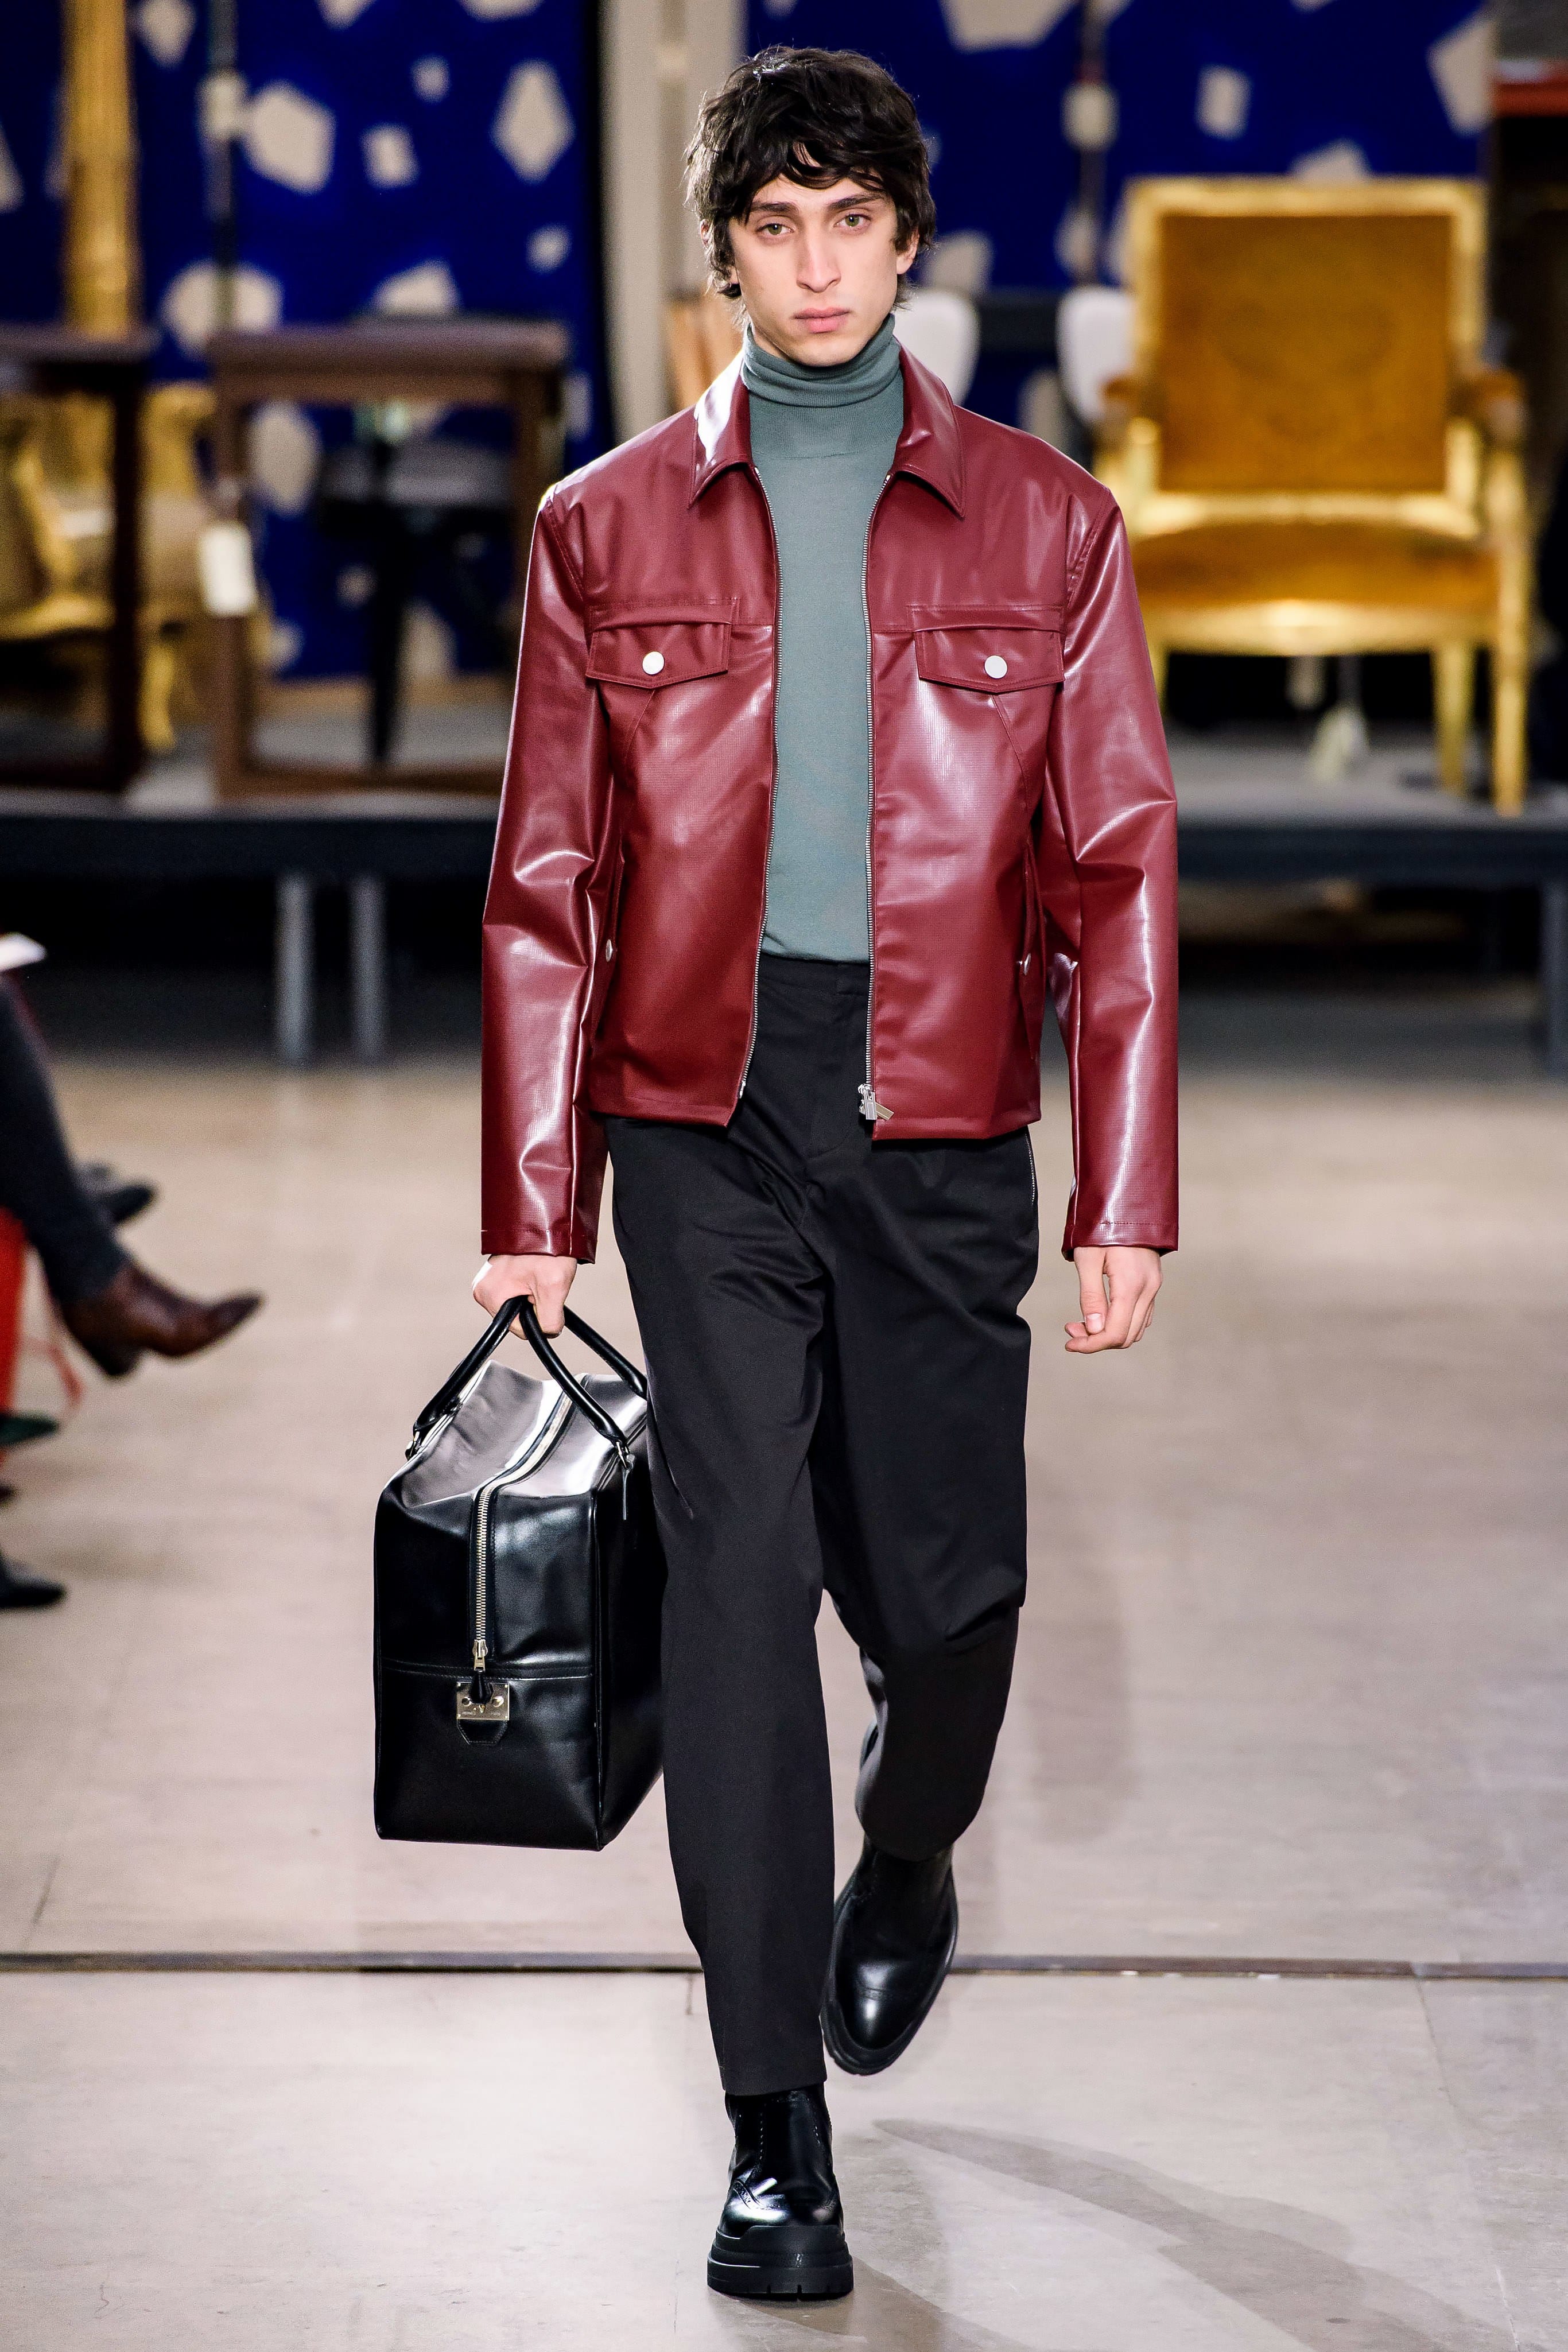 hermes men's leather jacket